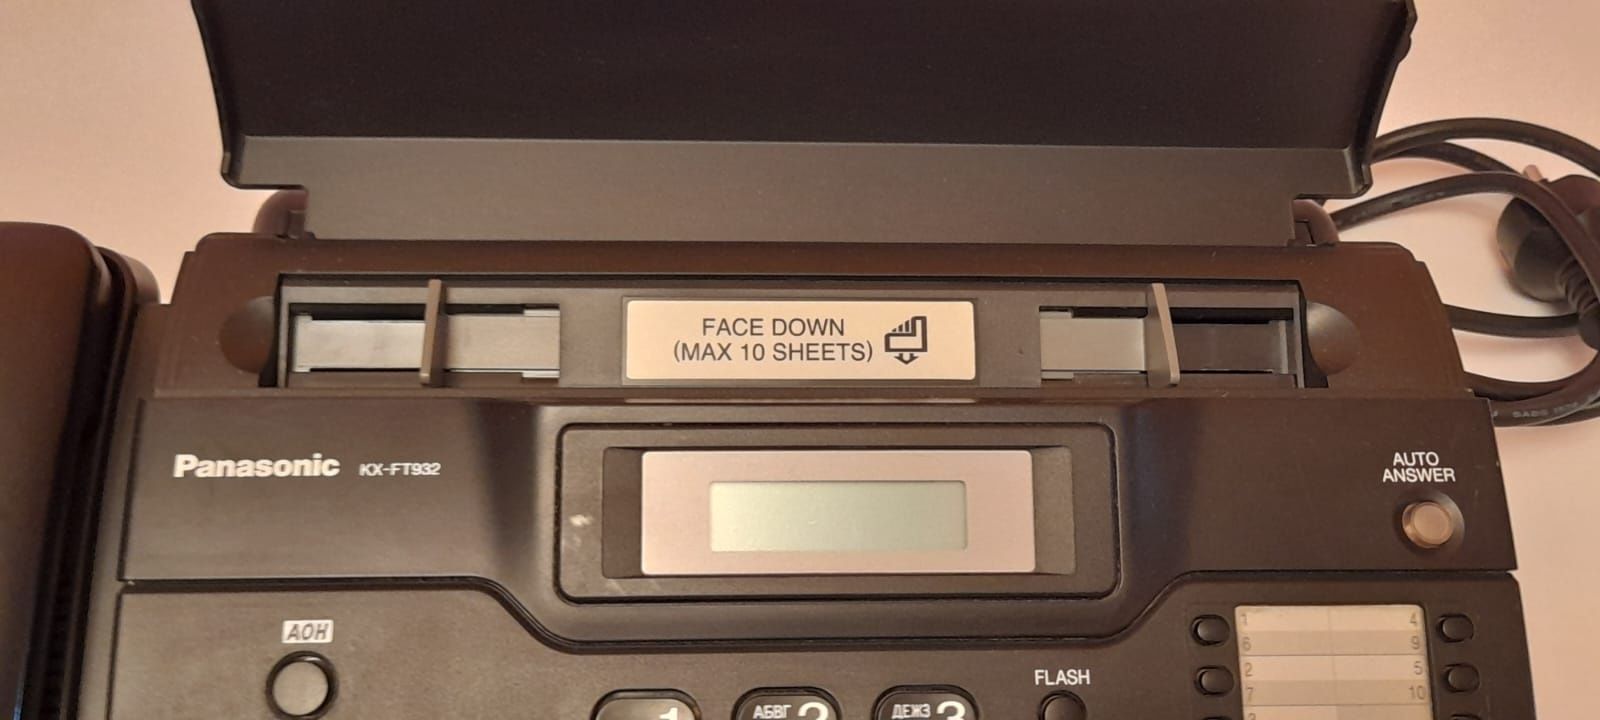 Продам телефон-факс Panasonic. В очень хорошем состояний. За 15000-тг.